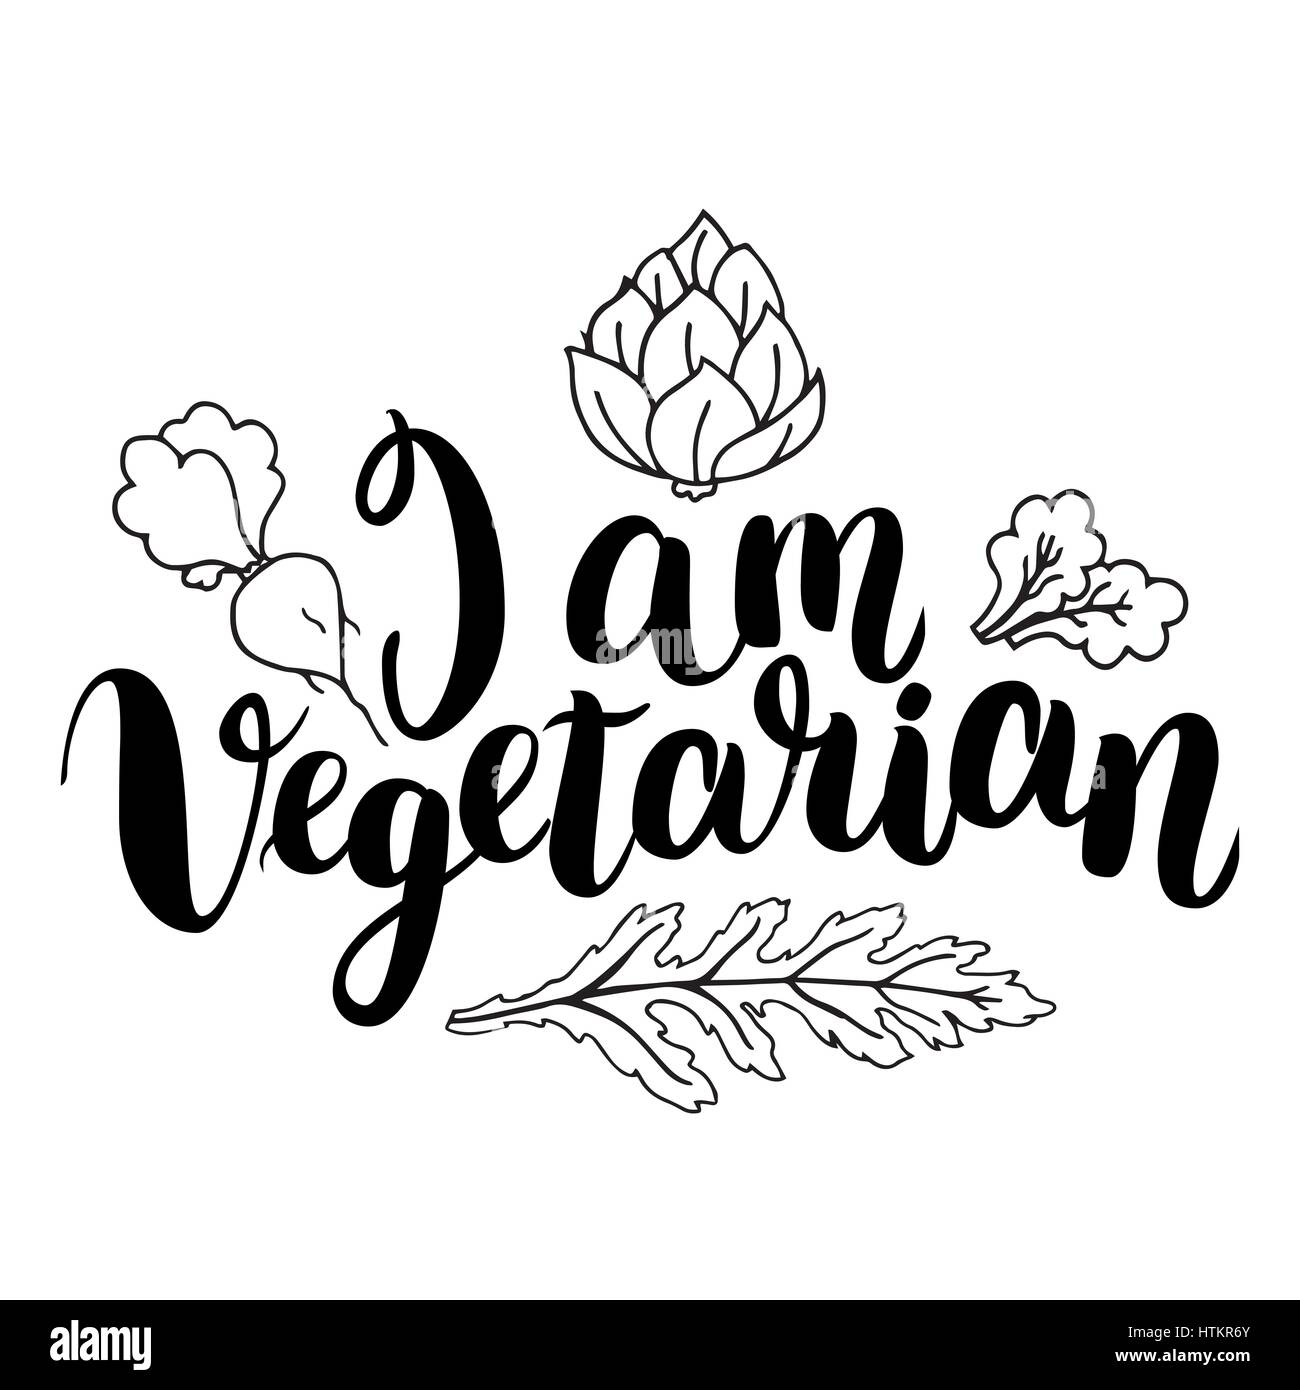 Je suis végétarienne. Citation inspirante à propos de végétarien. Expression calligraphie moderne dessiné à la main avec Apple. Lettrage manuscrit pour imprimer et poster Illustration de Vecteur